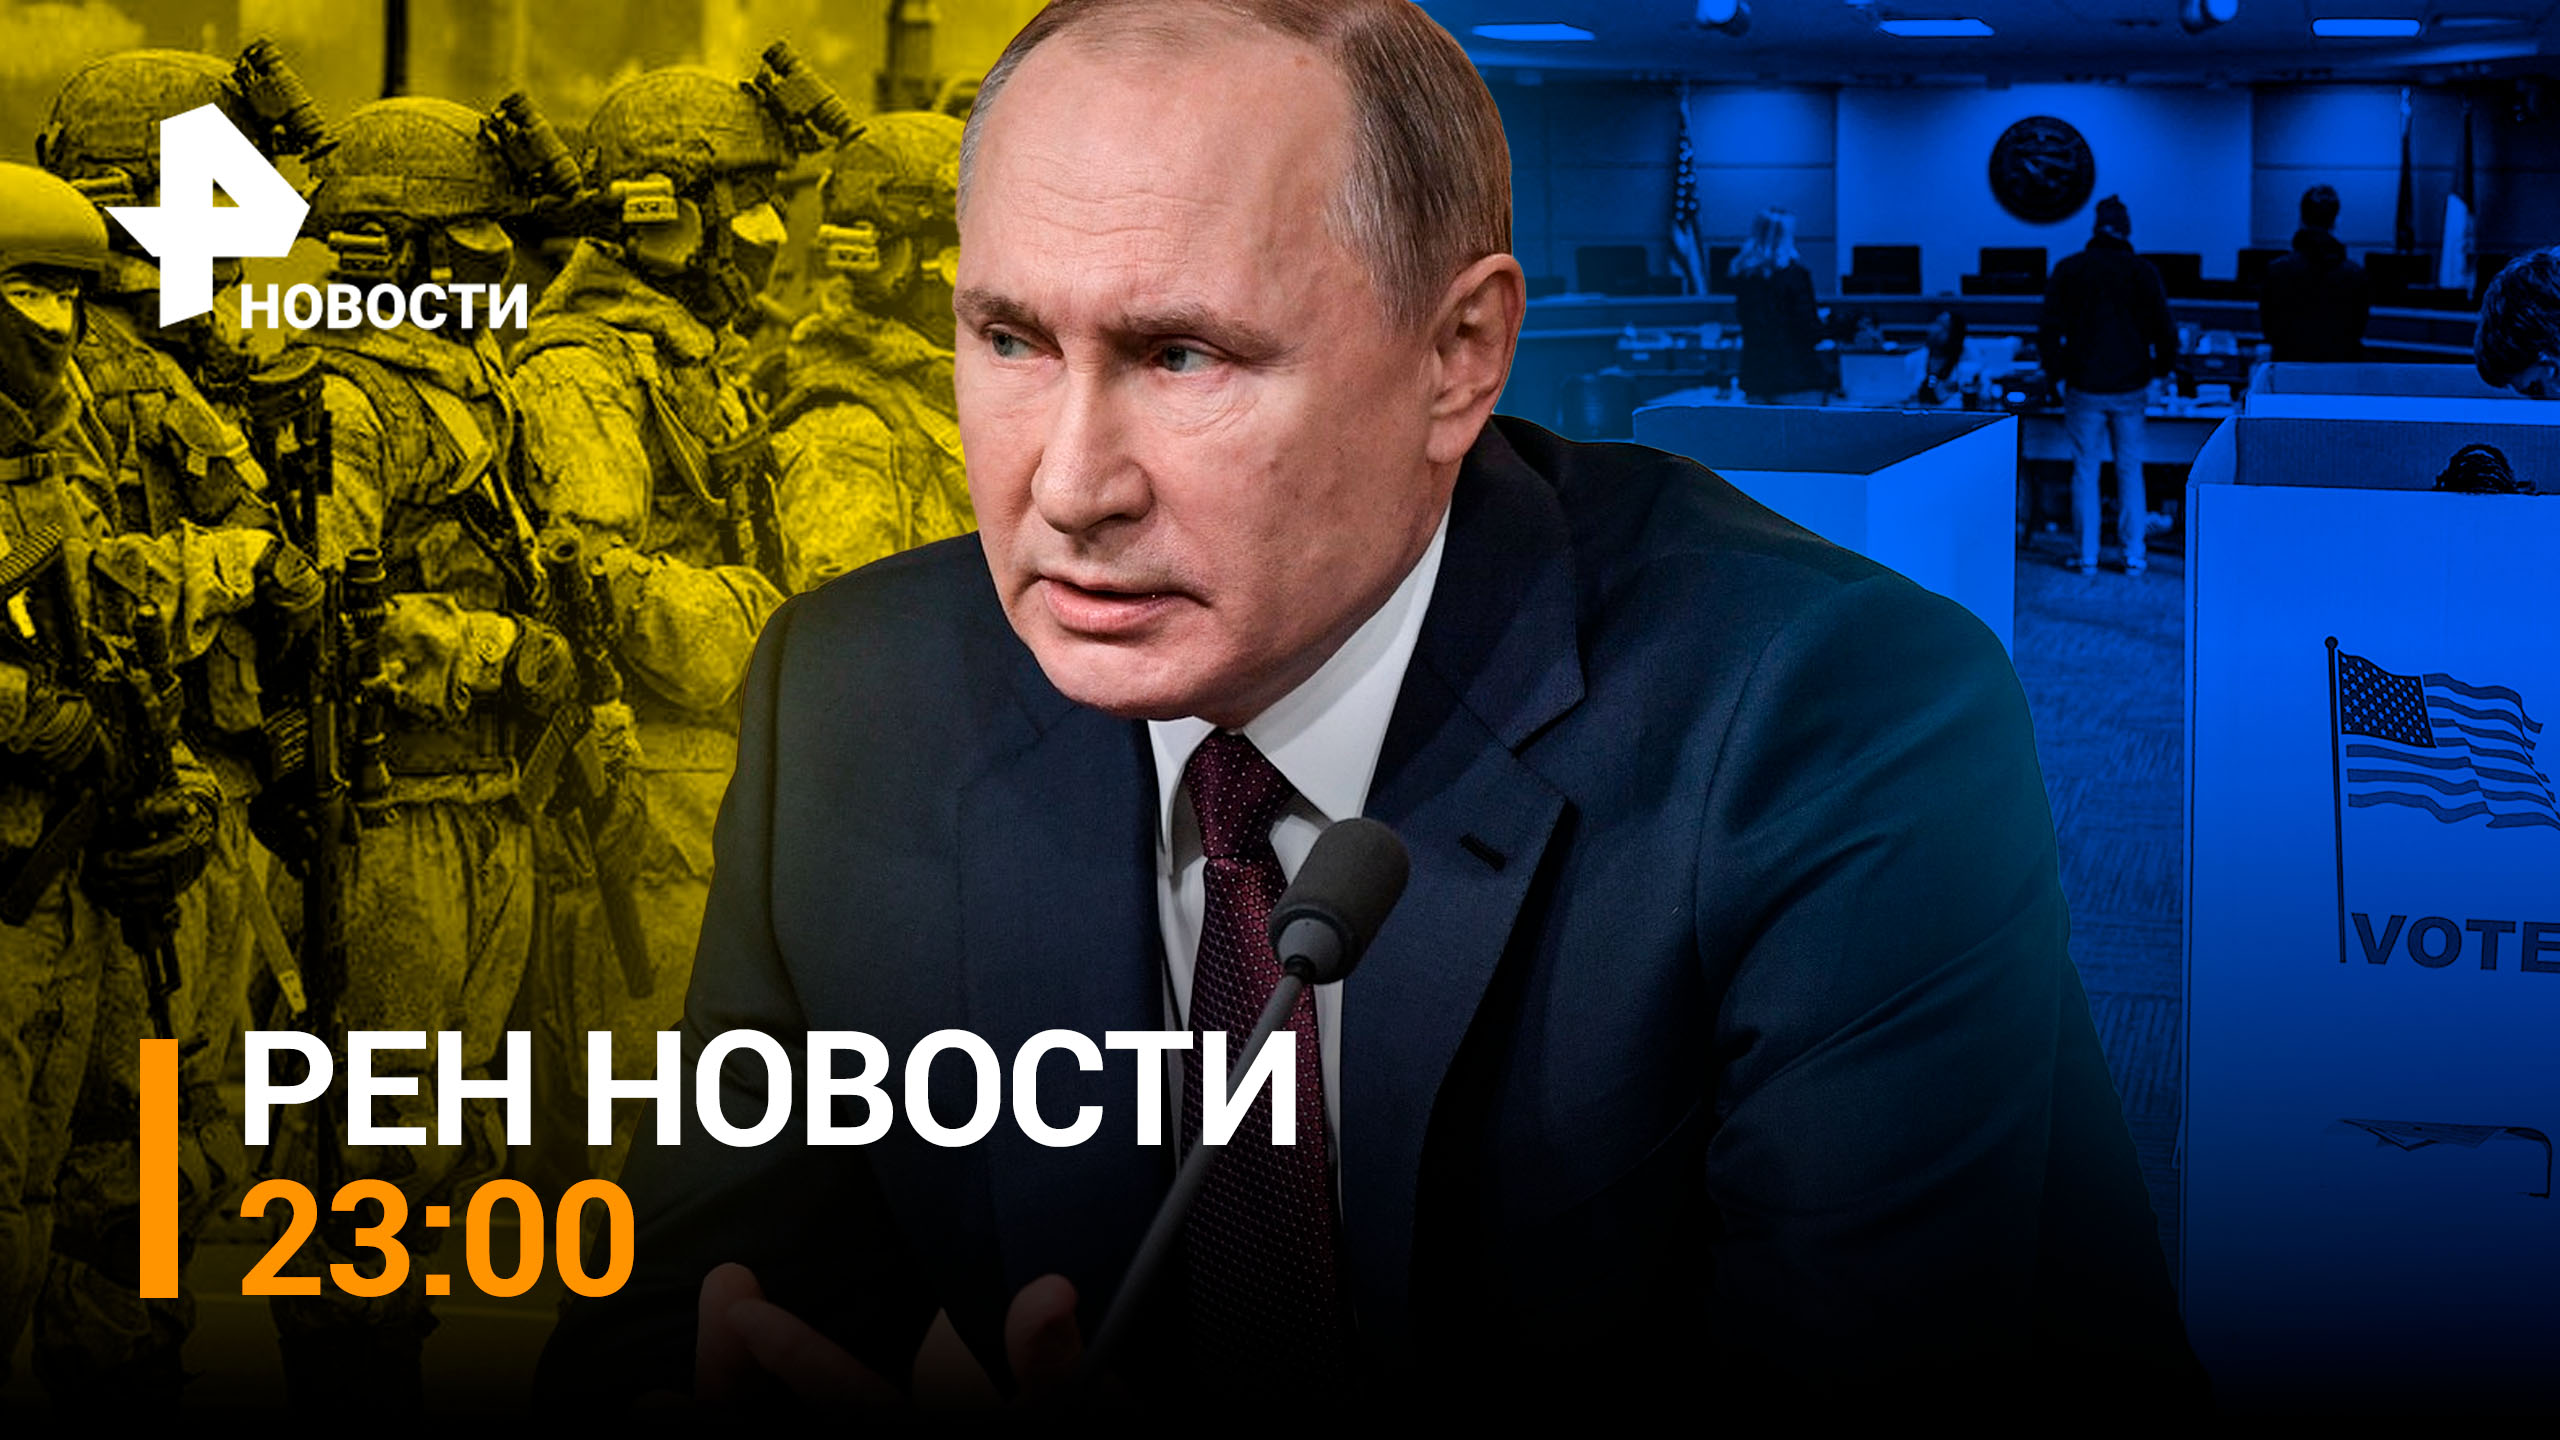 О чем министр обороны говорил с командующим СВО? / РЕН Новости 08.11.2022, 23:00